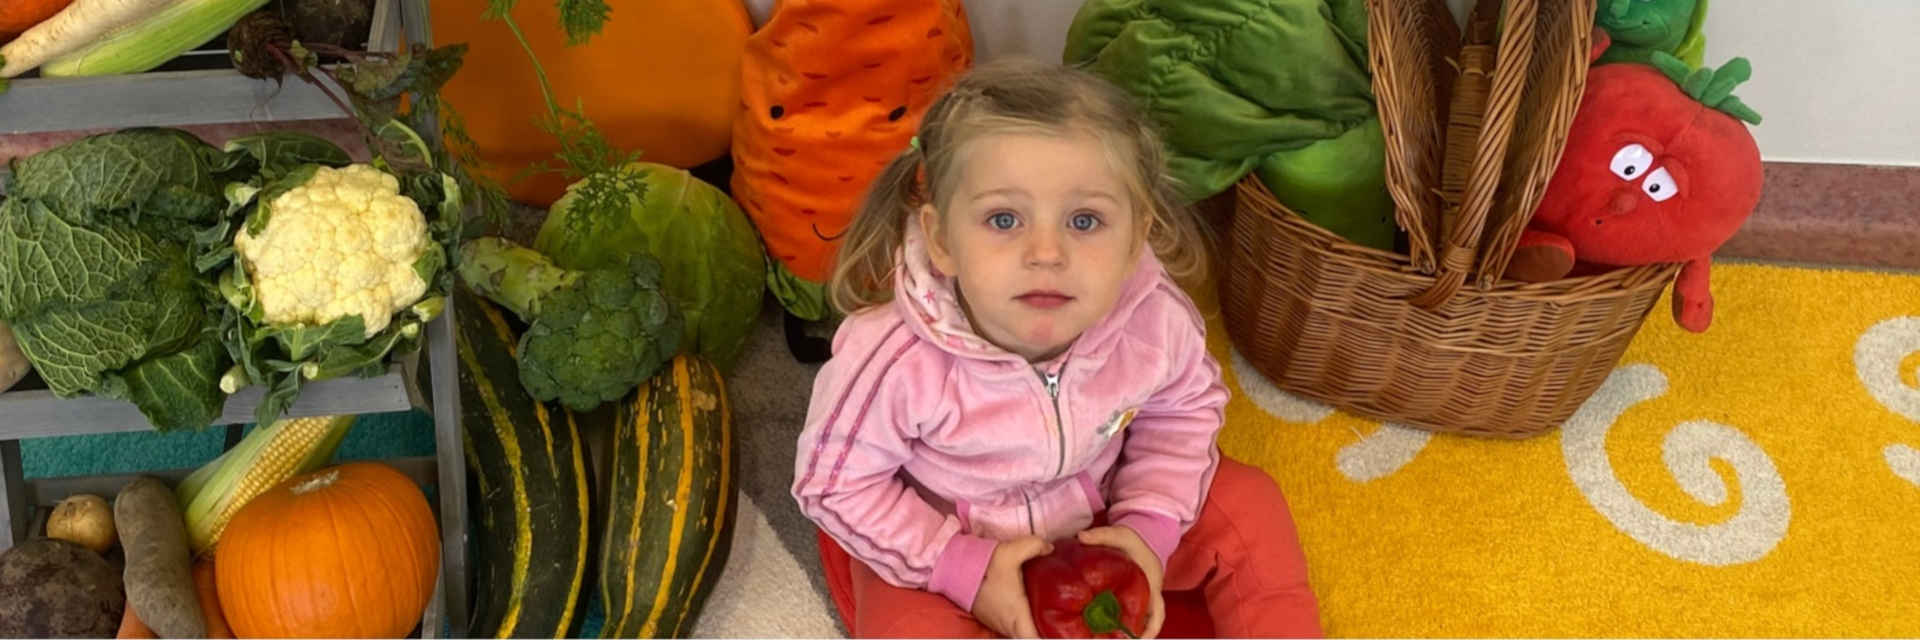 Dziewczynka z jesiennymi warzywami